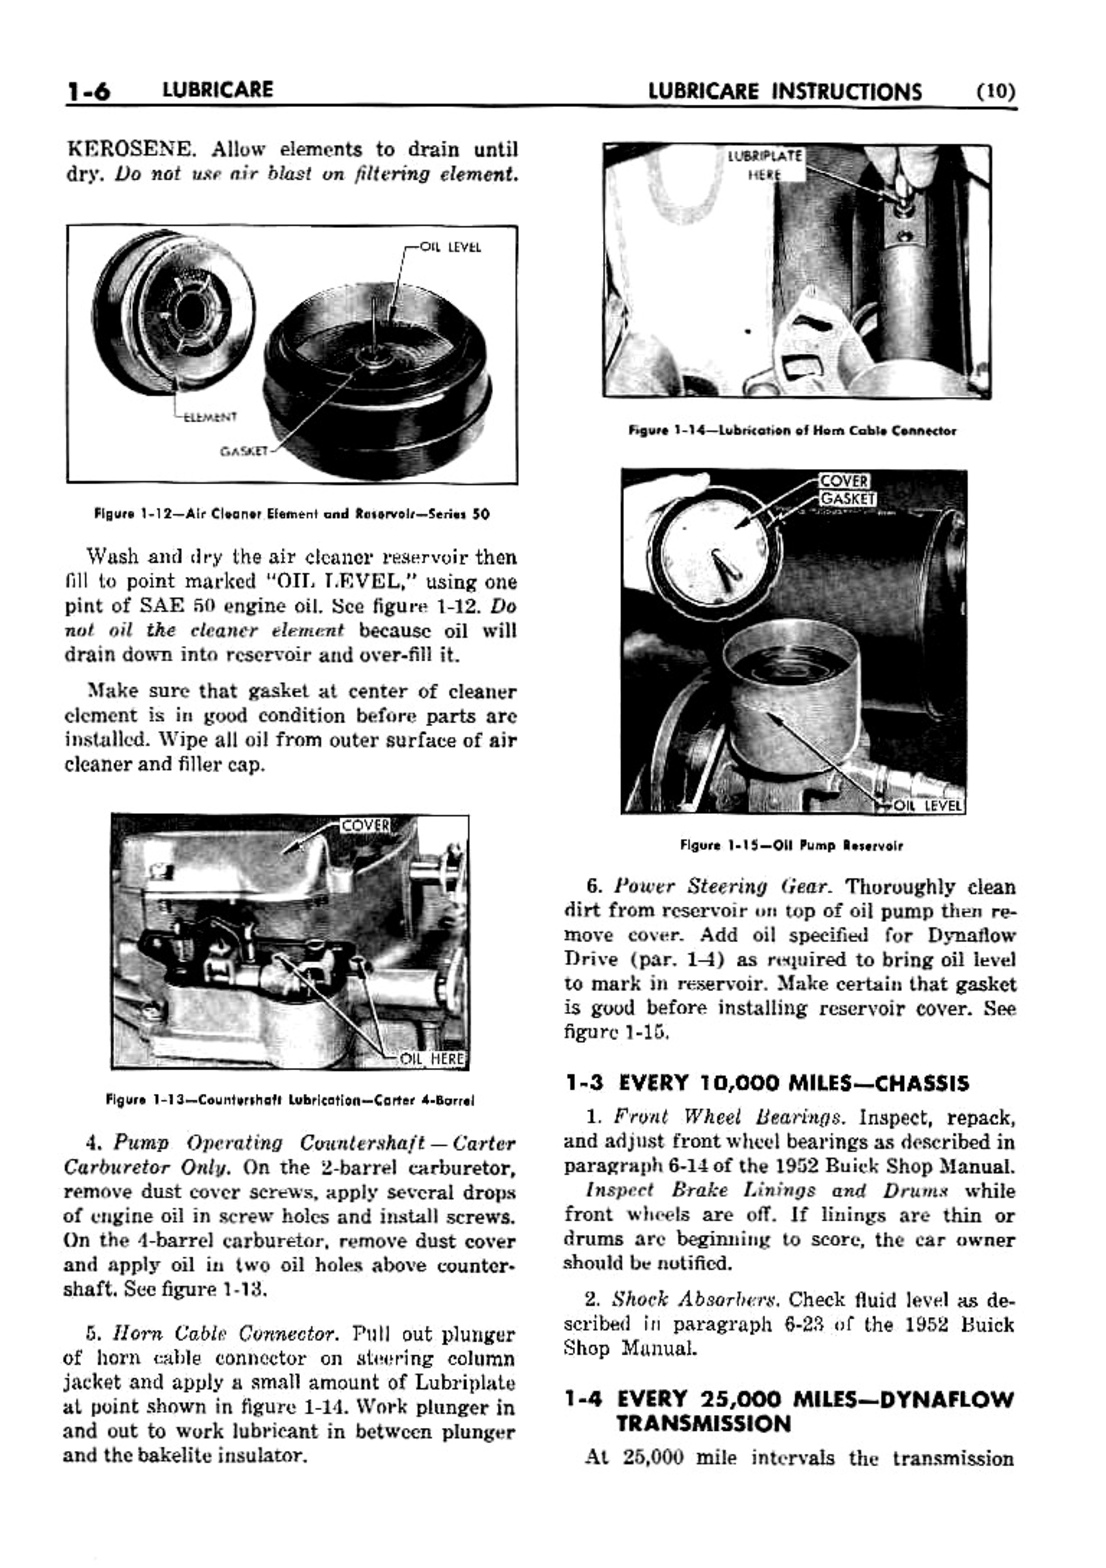 n_02 1953 Buick Shop Manual - Lubricare-006-006.jpg